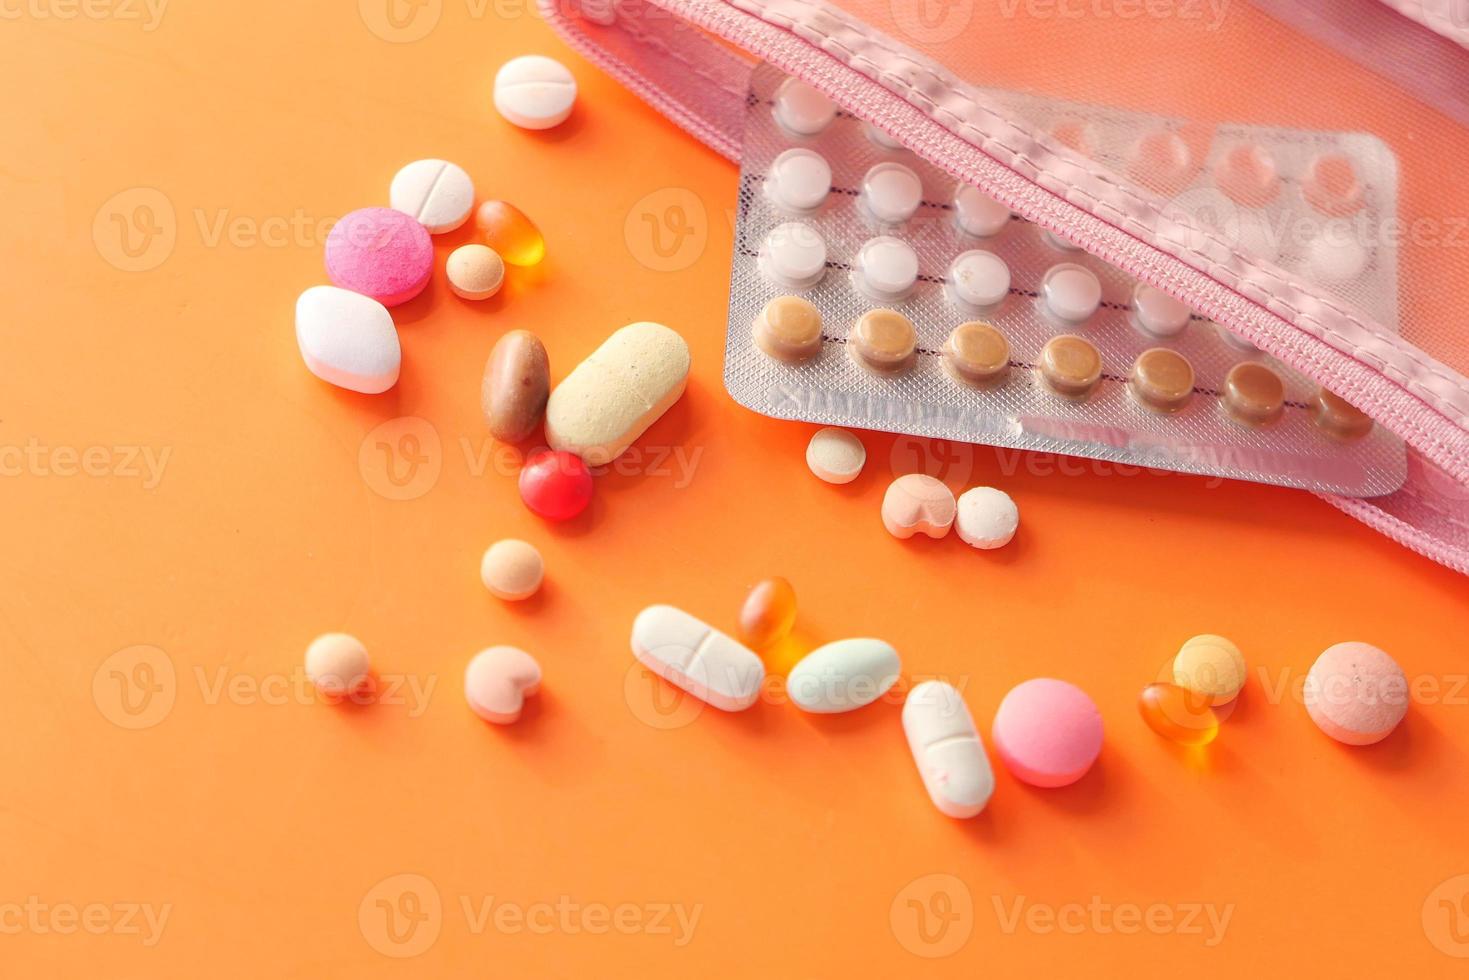 pílulas anticoncepcionais em fundo laranja foto